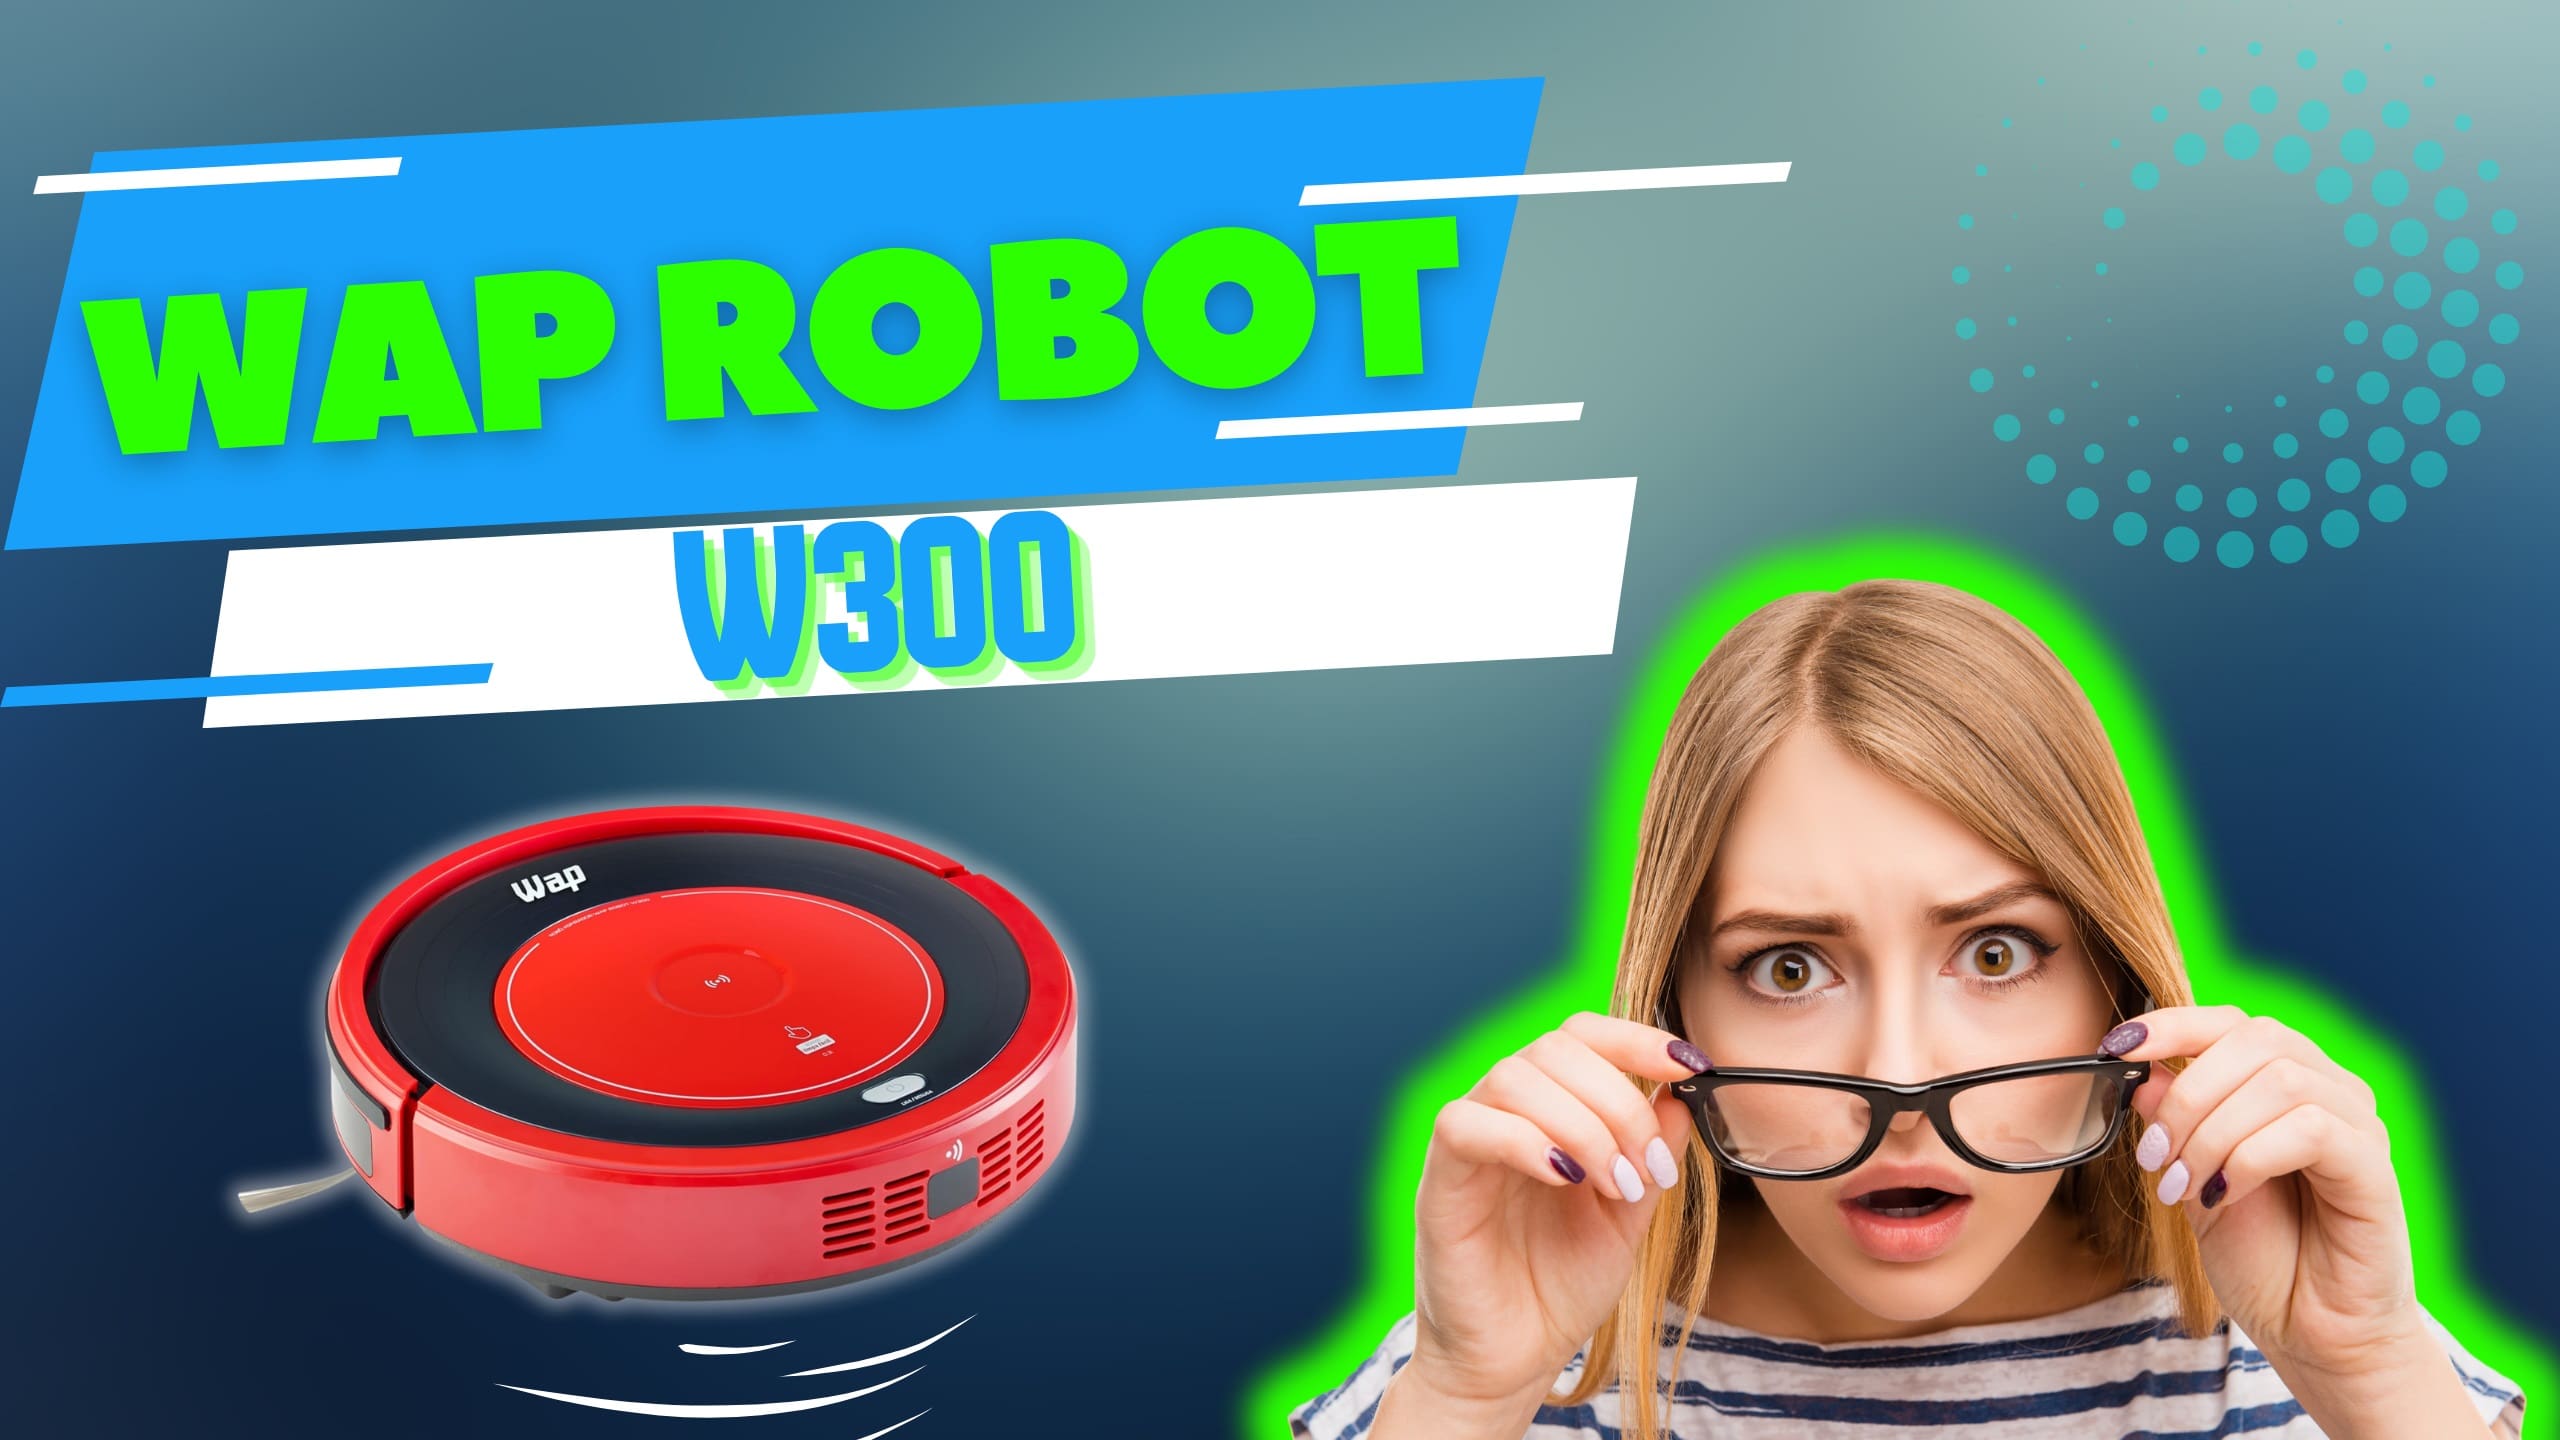 O Wap Robot W300 é bom?